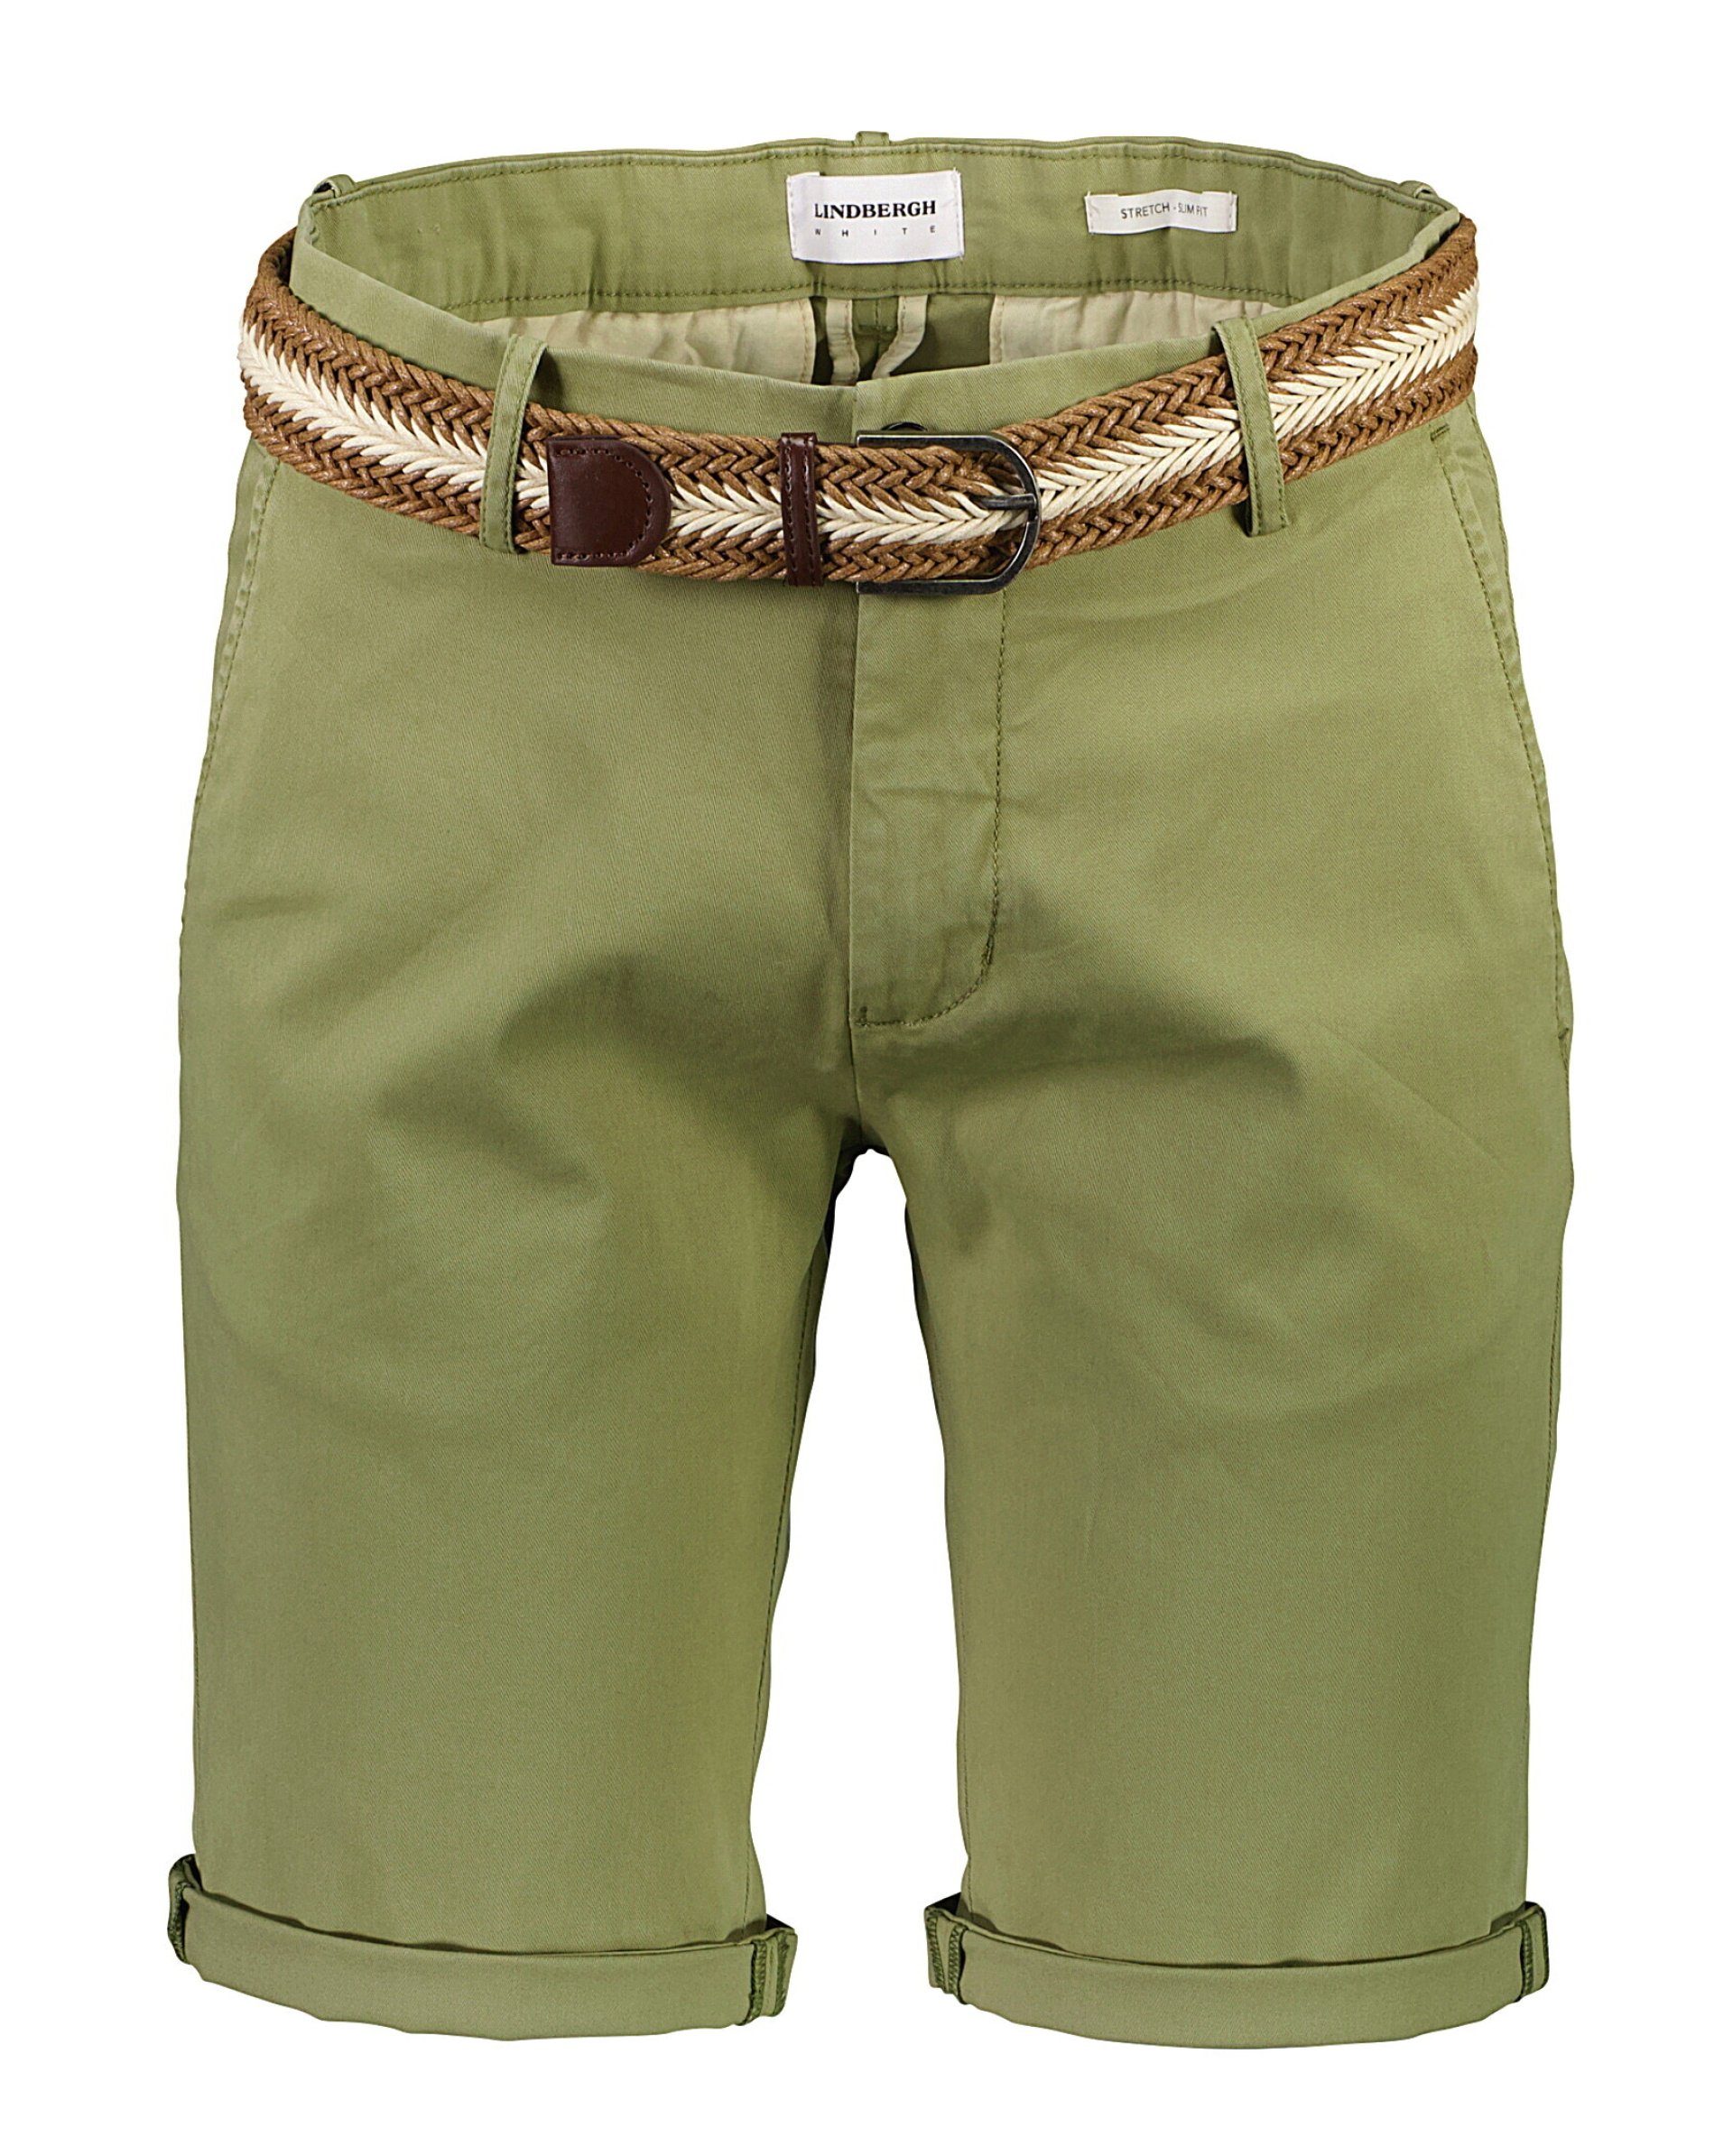 Lindbergh Chino-Shorts grün / army